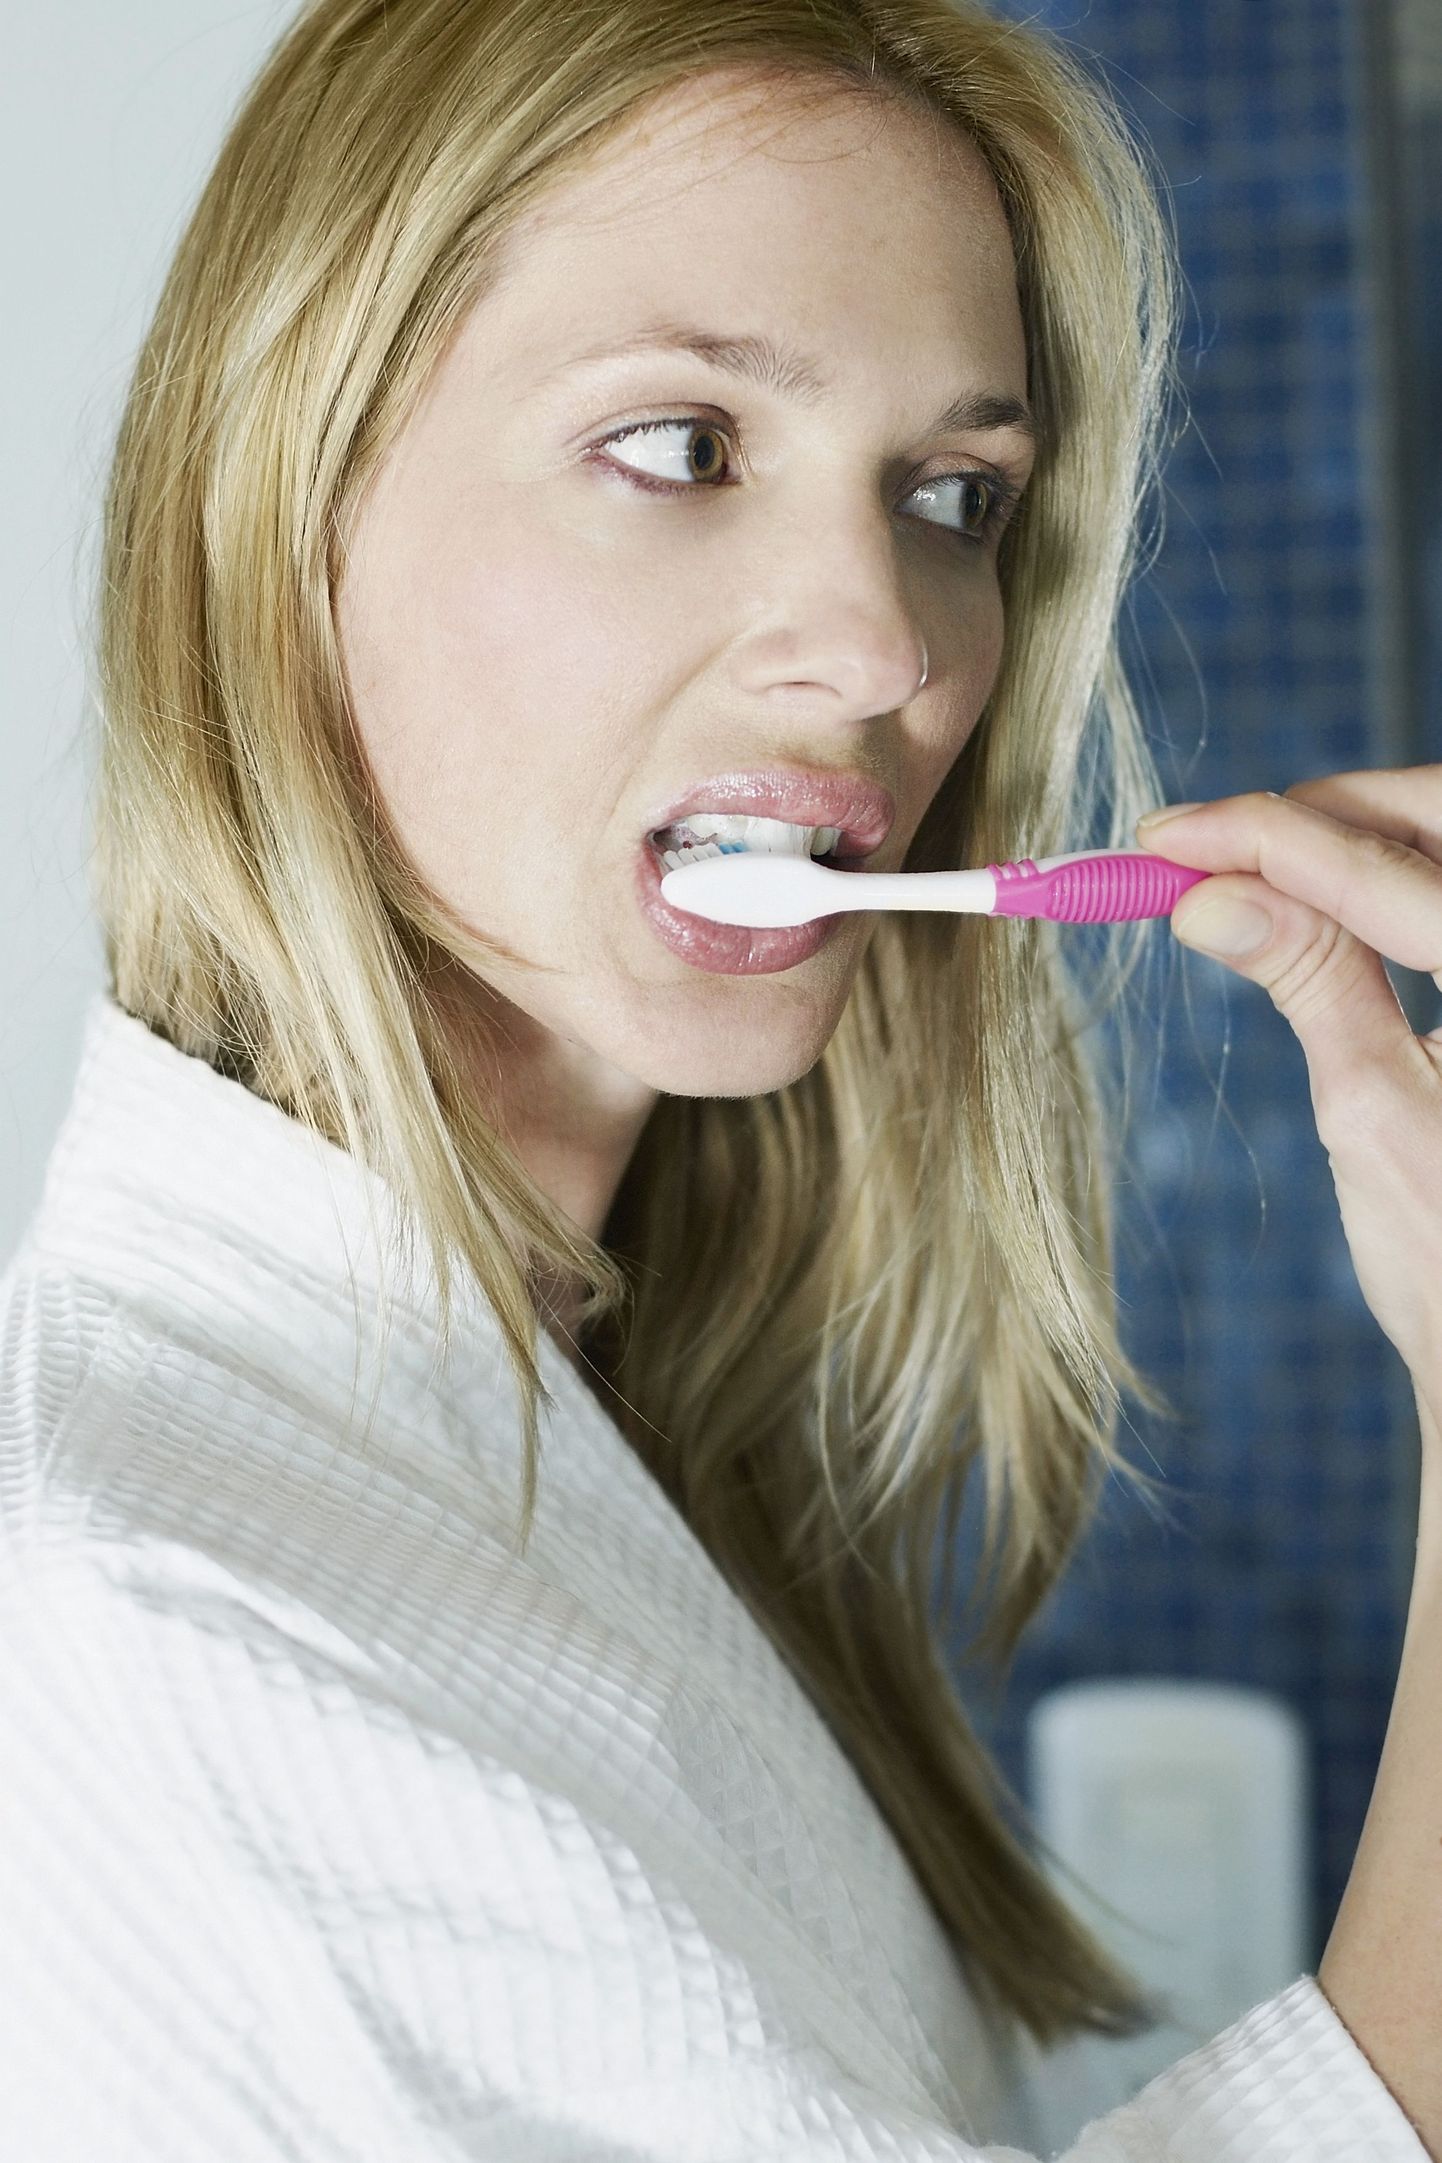 Liiga tugevalt harjamise vältimiseks tuleks hambaharja hoida nagu pliiatsit - kasutades vaid sõrmeotsi.